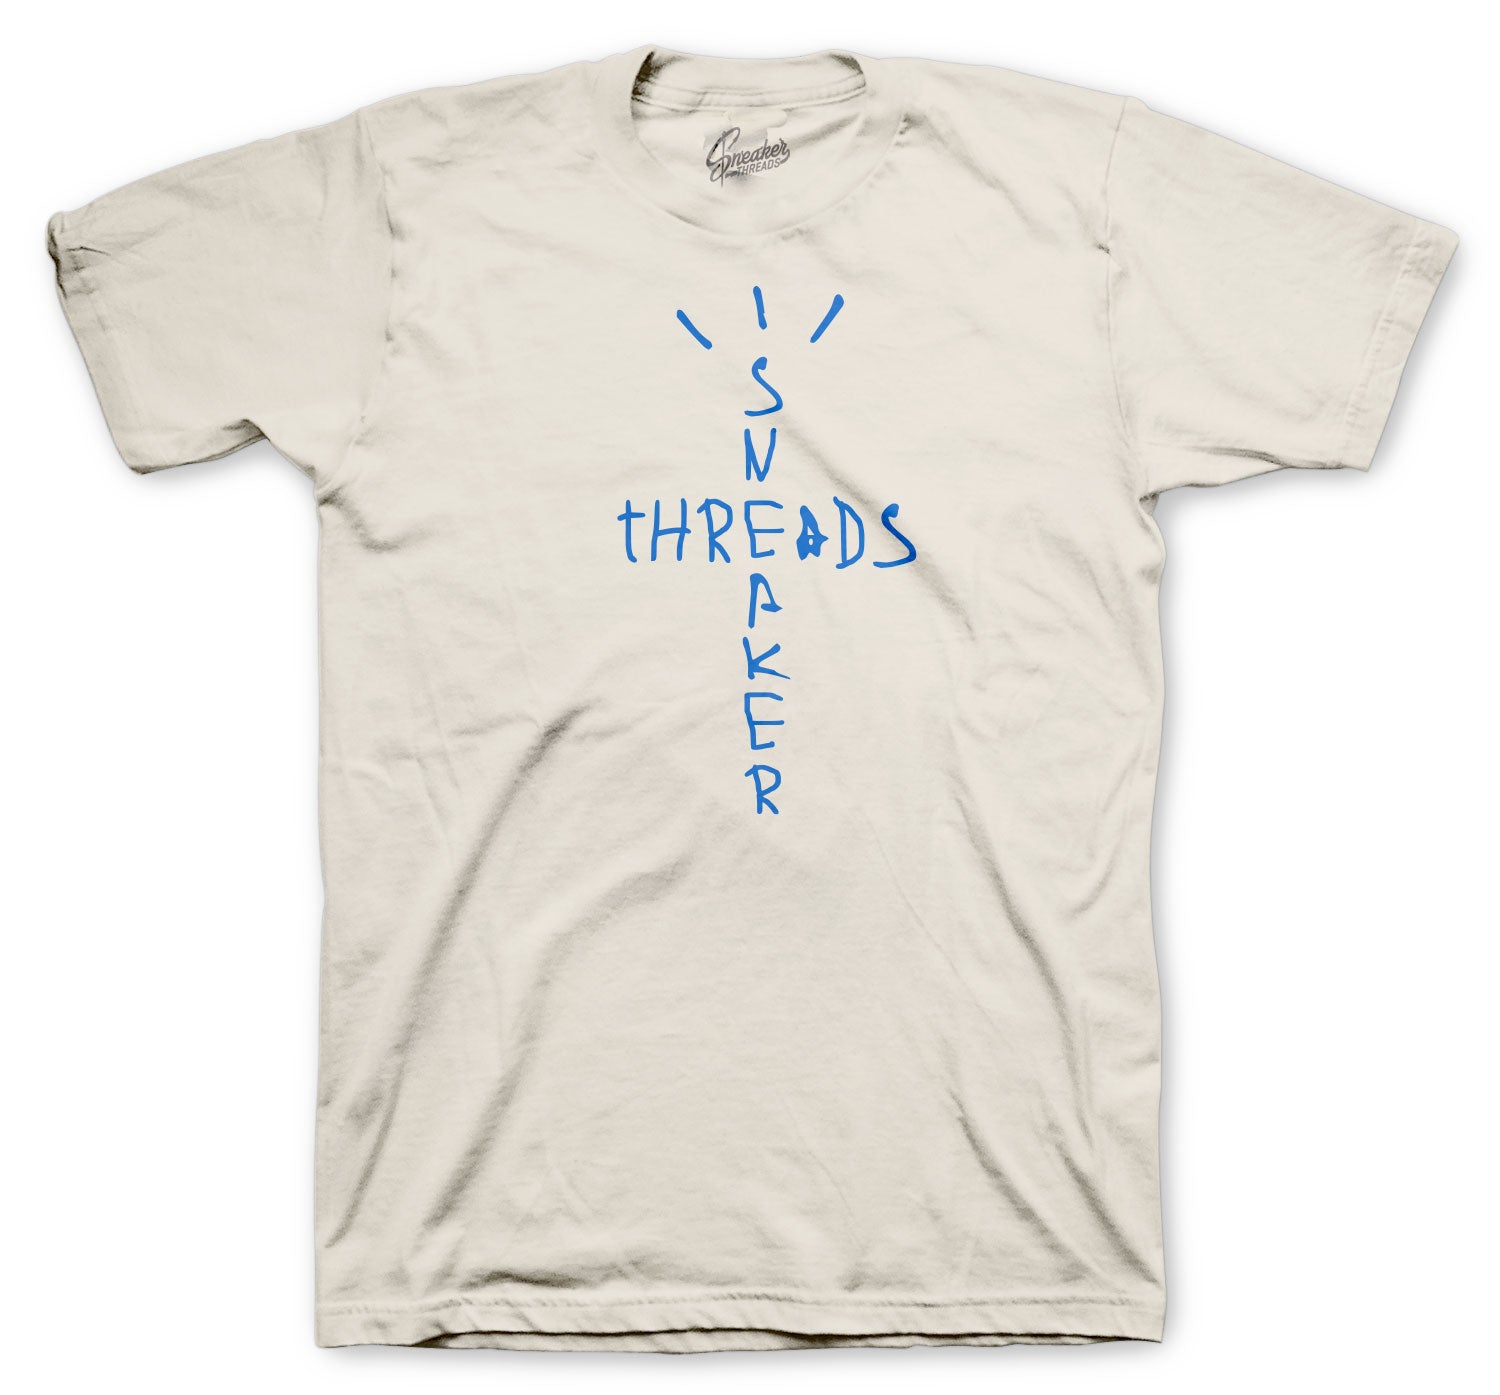 Travis Scott x Jordan x Fragment T-Shirt - Travis Scott Merch